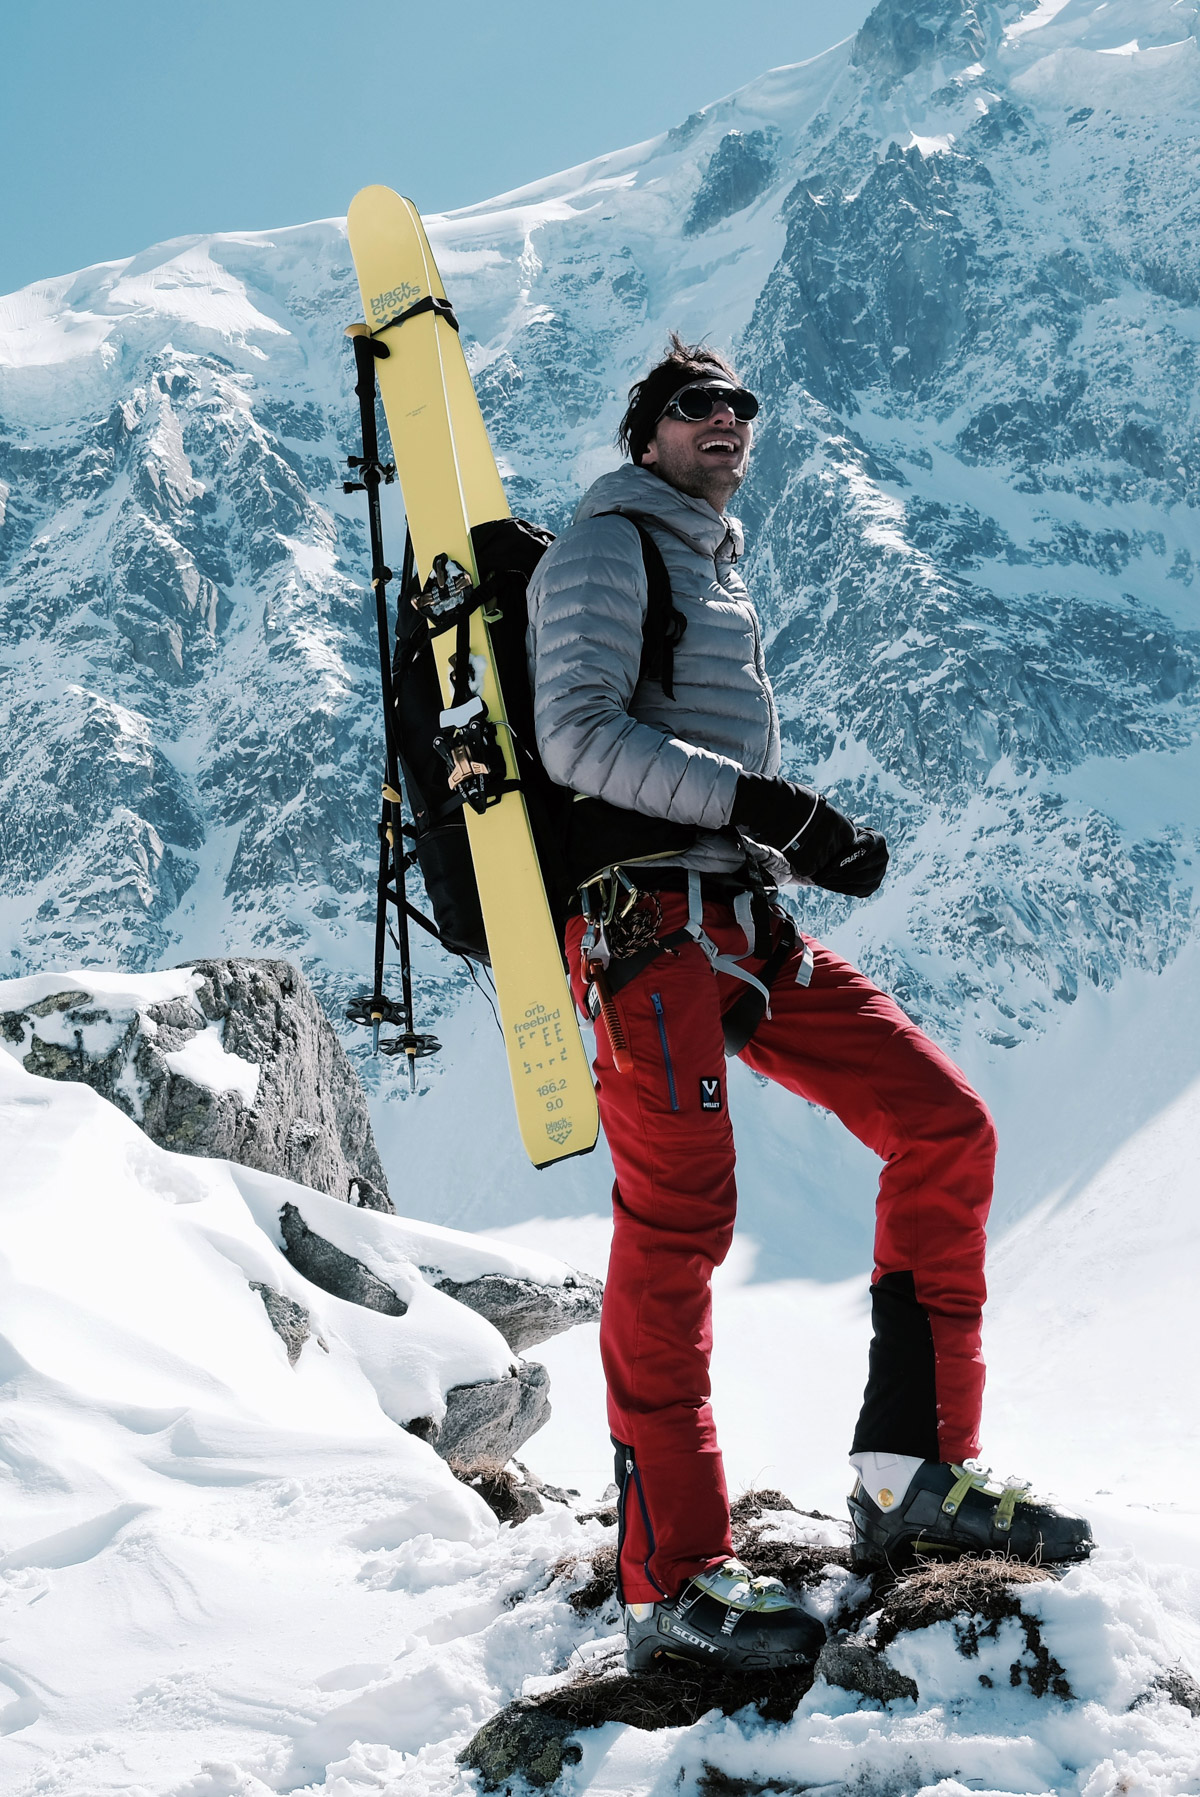 camille en ski en montagne dans les alpes